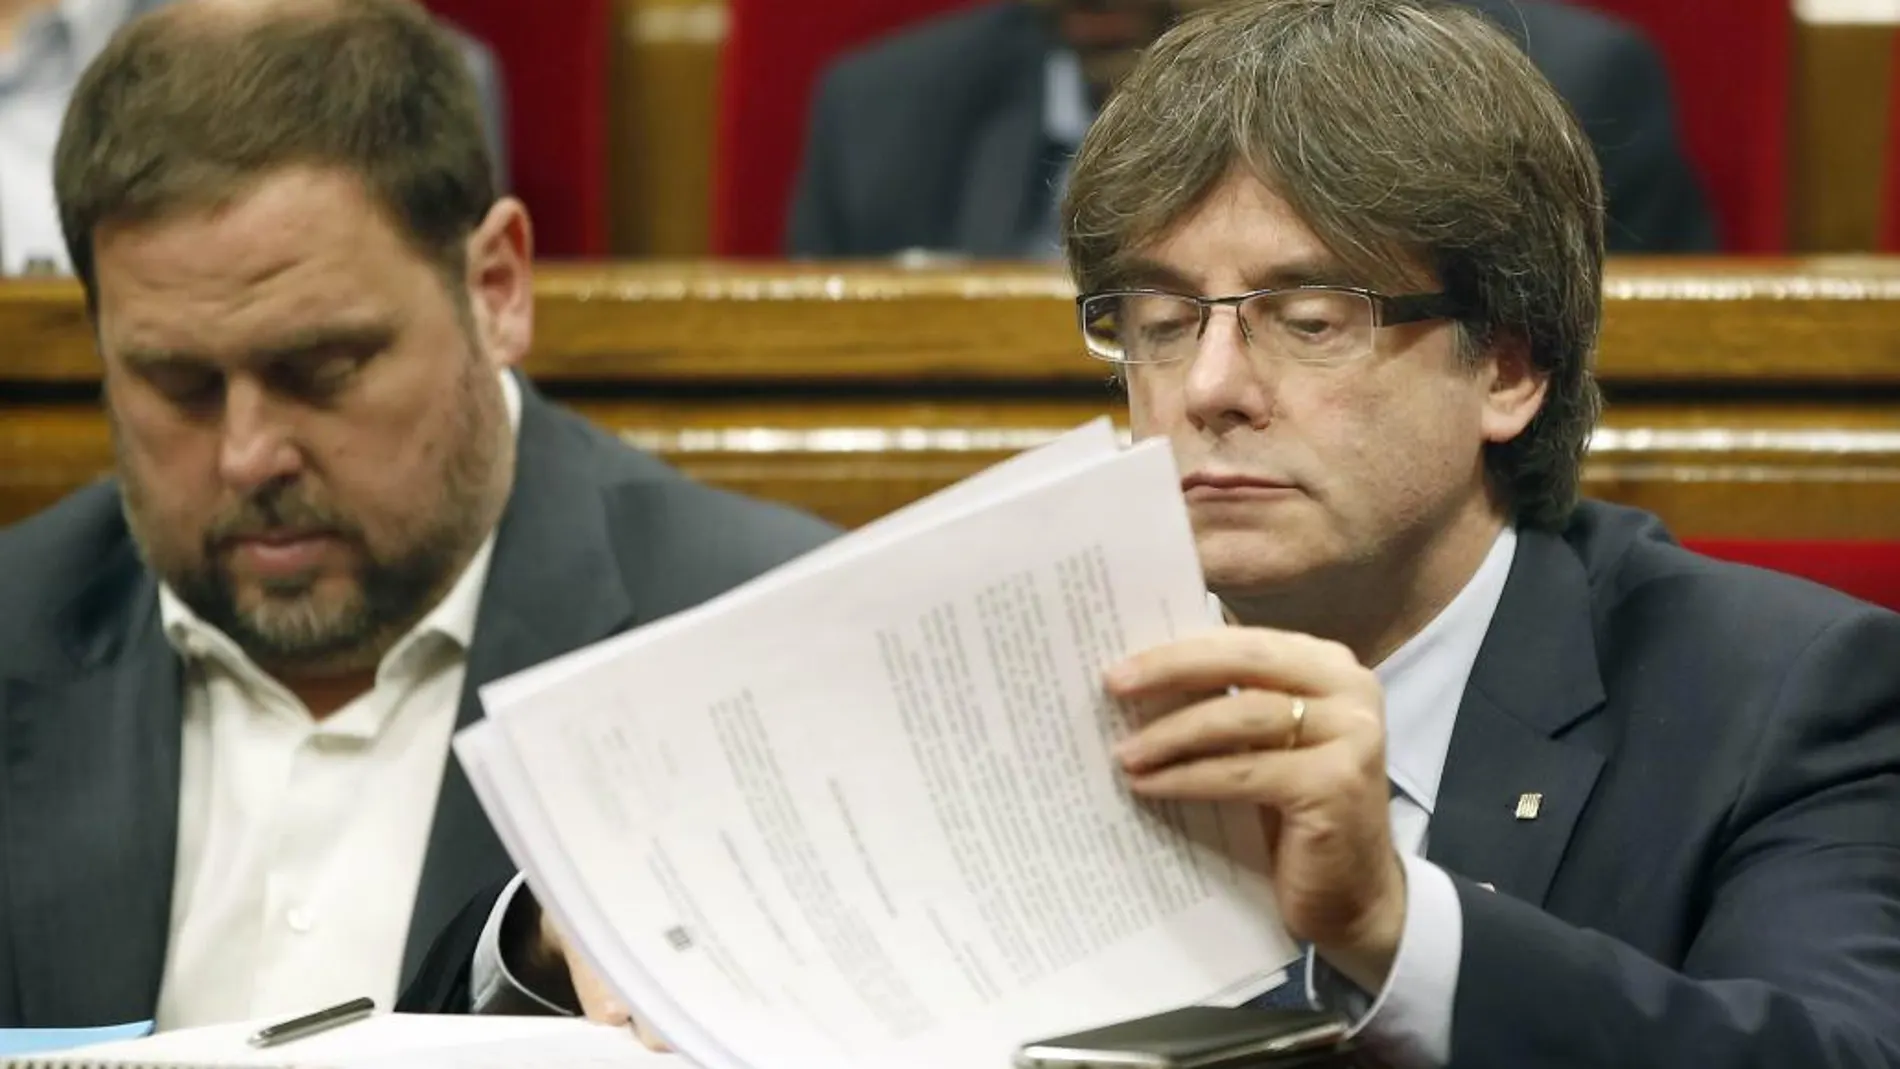 El presidente de la Generalitat de Cataluña, Carles Puigemont y el vicepresidente, Oriol Junqueras